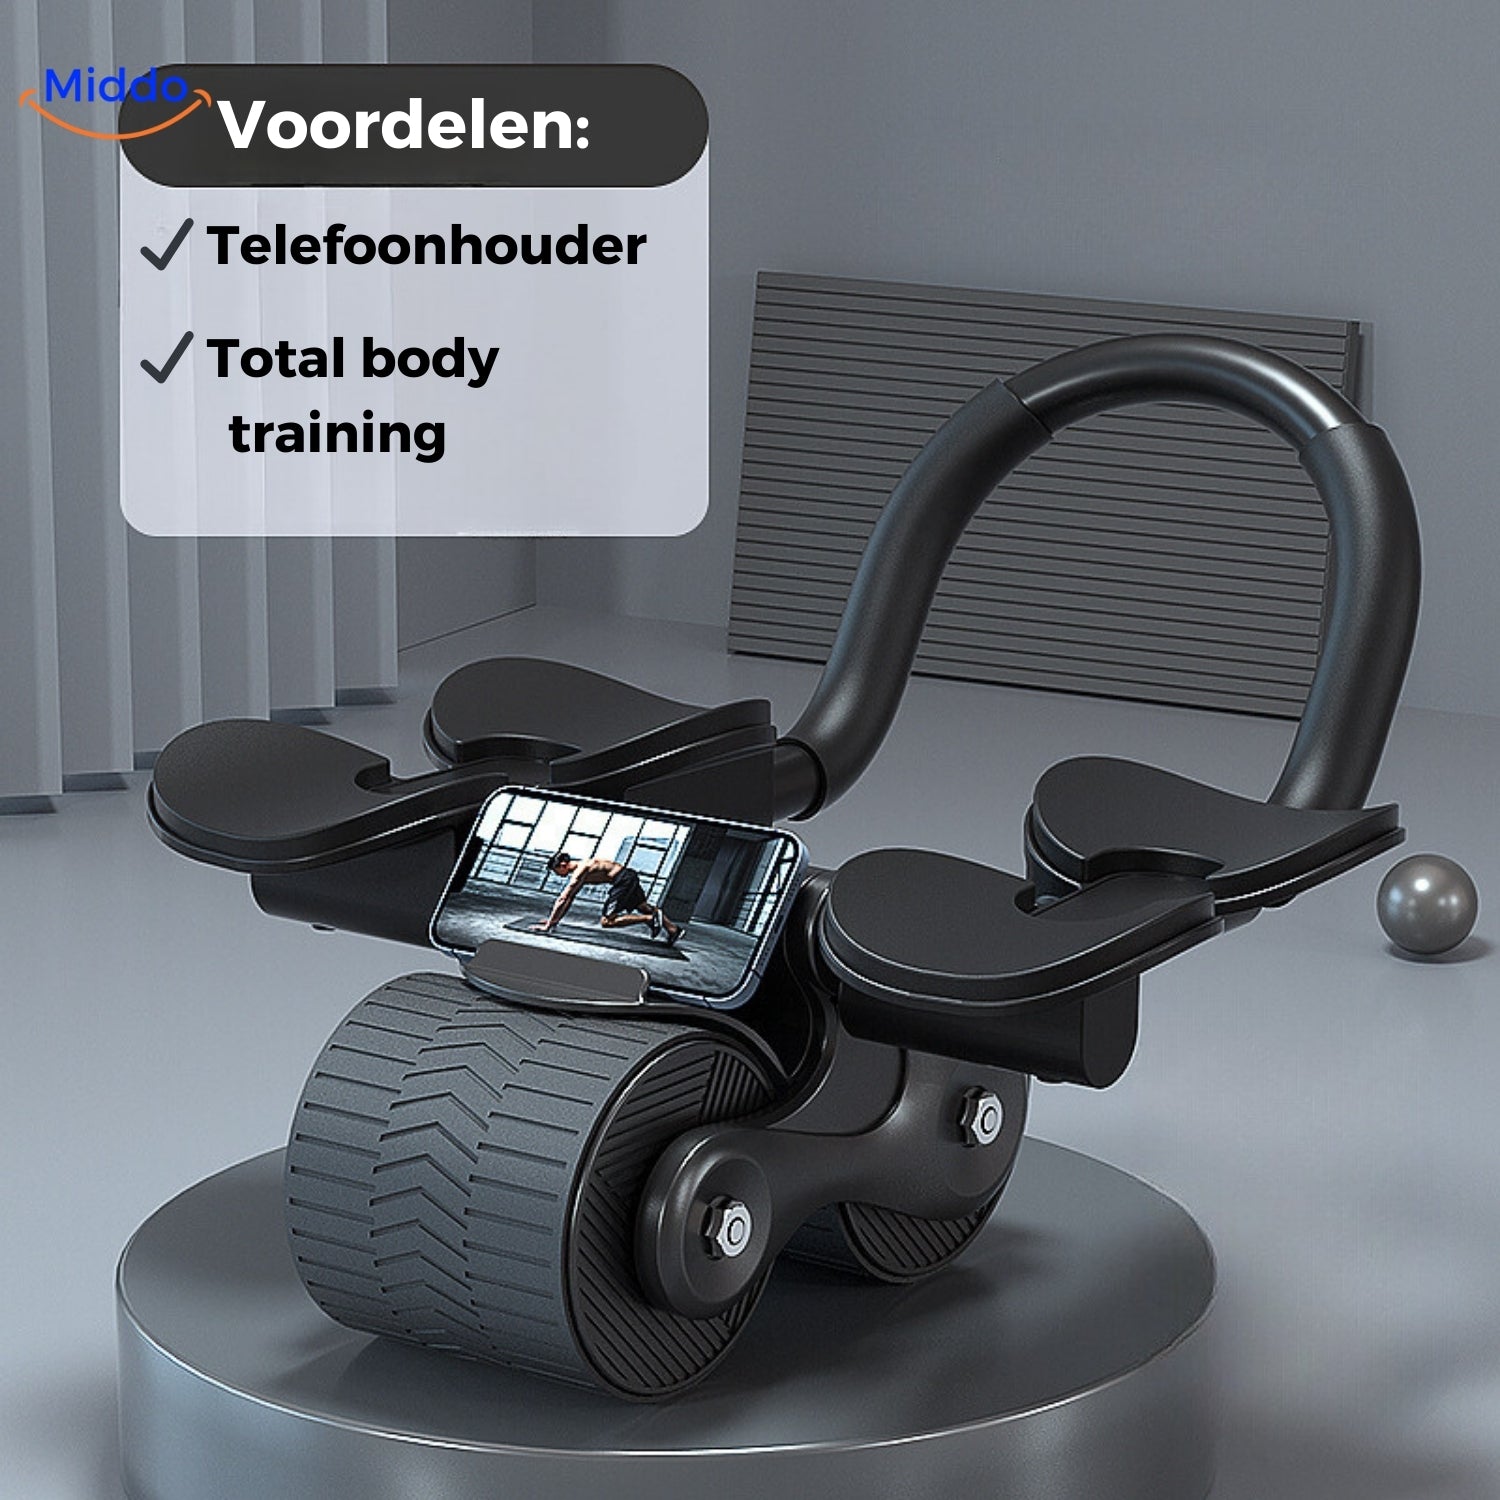 Zwarte Abwheel pro buikspier trainer met telefoonhouder van Middo.nl